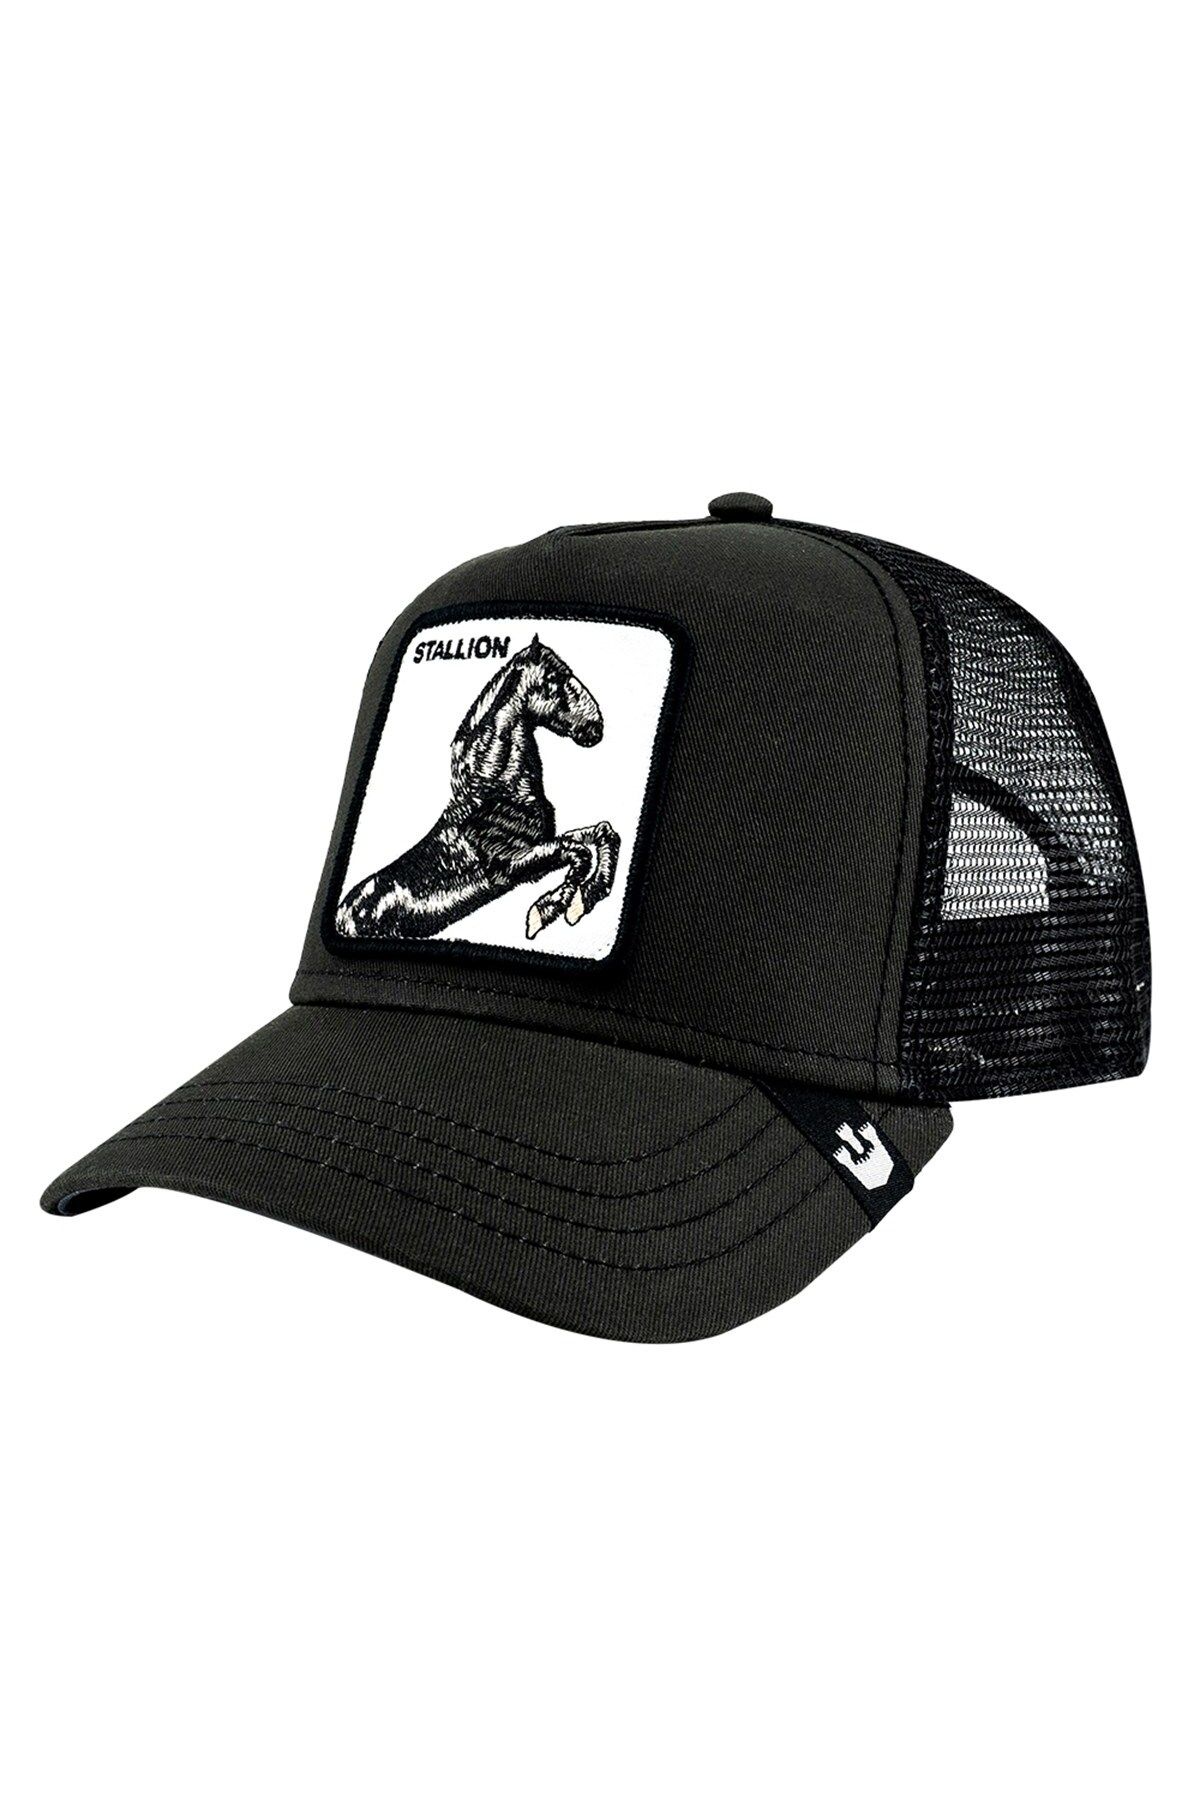 Goorin Bros Unisex Siyah Stallion Şapka 101-9991 Fiyatı, Yorumları -  Trendyol